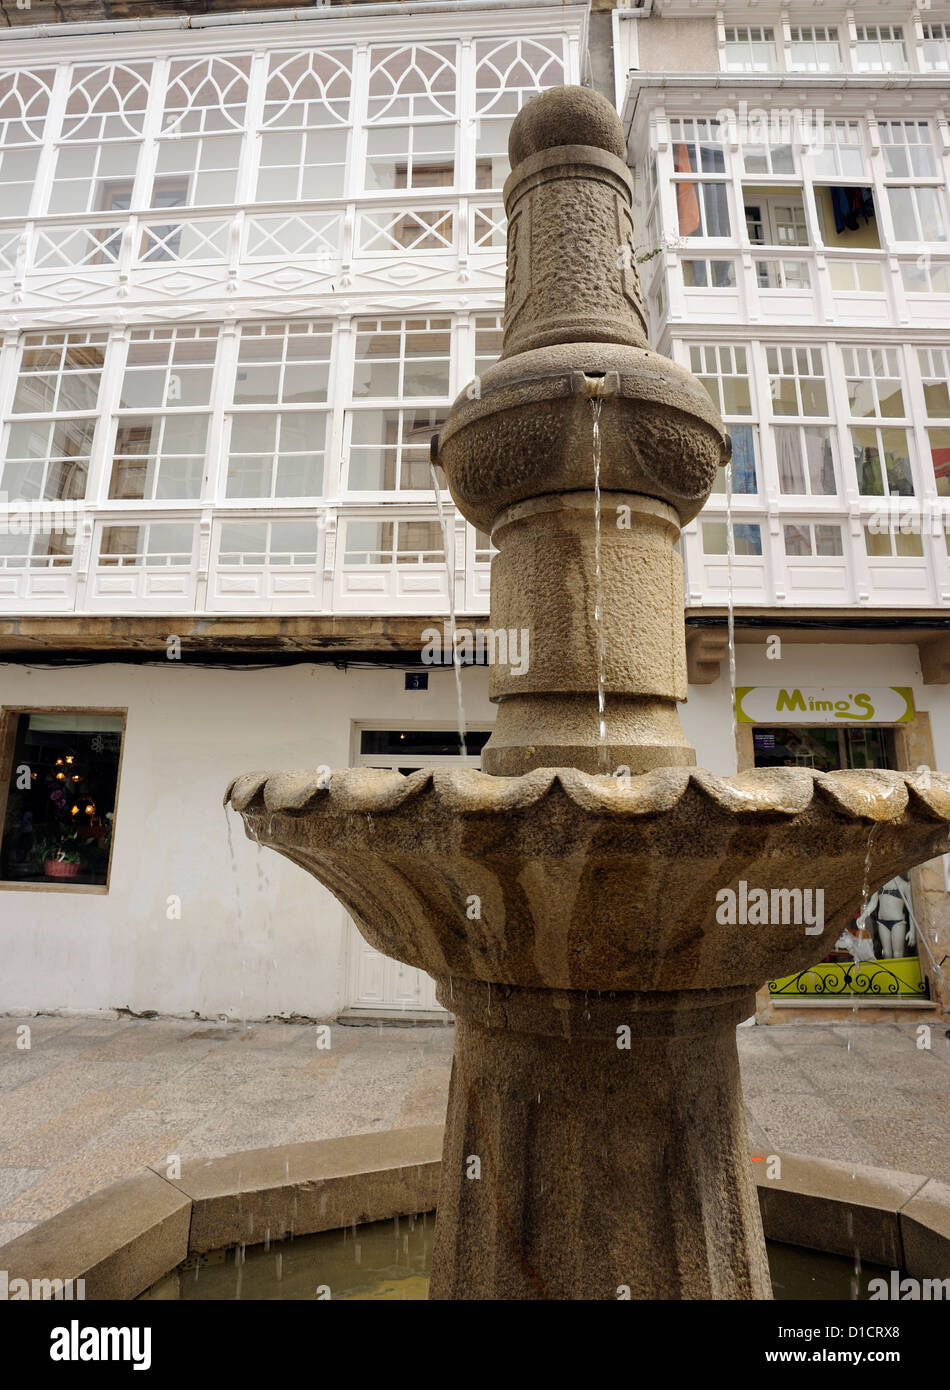 Fuente en la plaza principal de Viveiro. Hay una casa de pueblo tradicional con acristalamiento de balcones, galerías. Viveiro, Galicia, Foto de stock